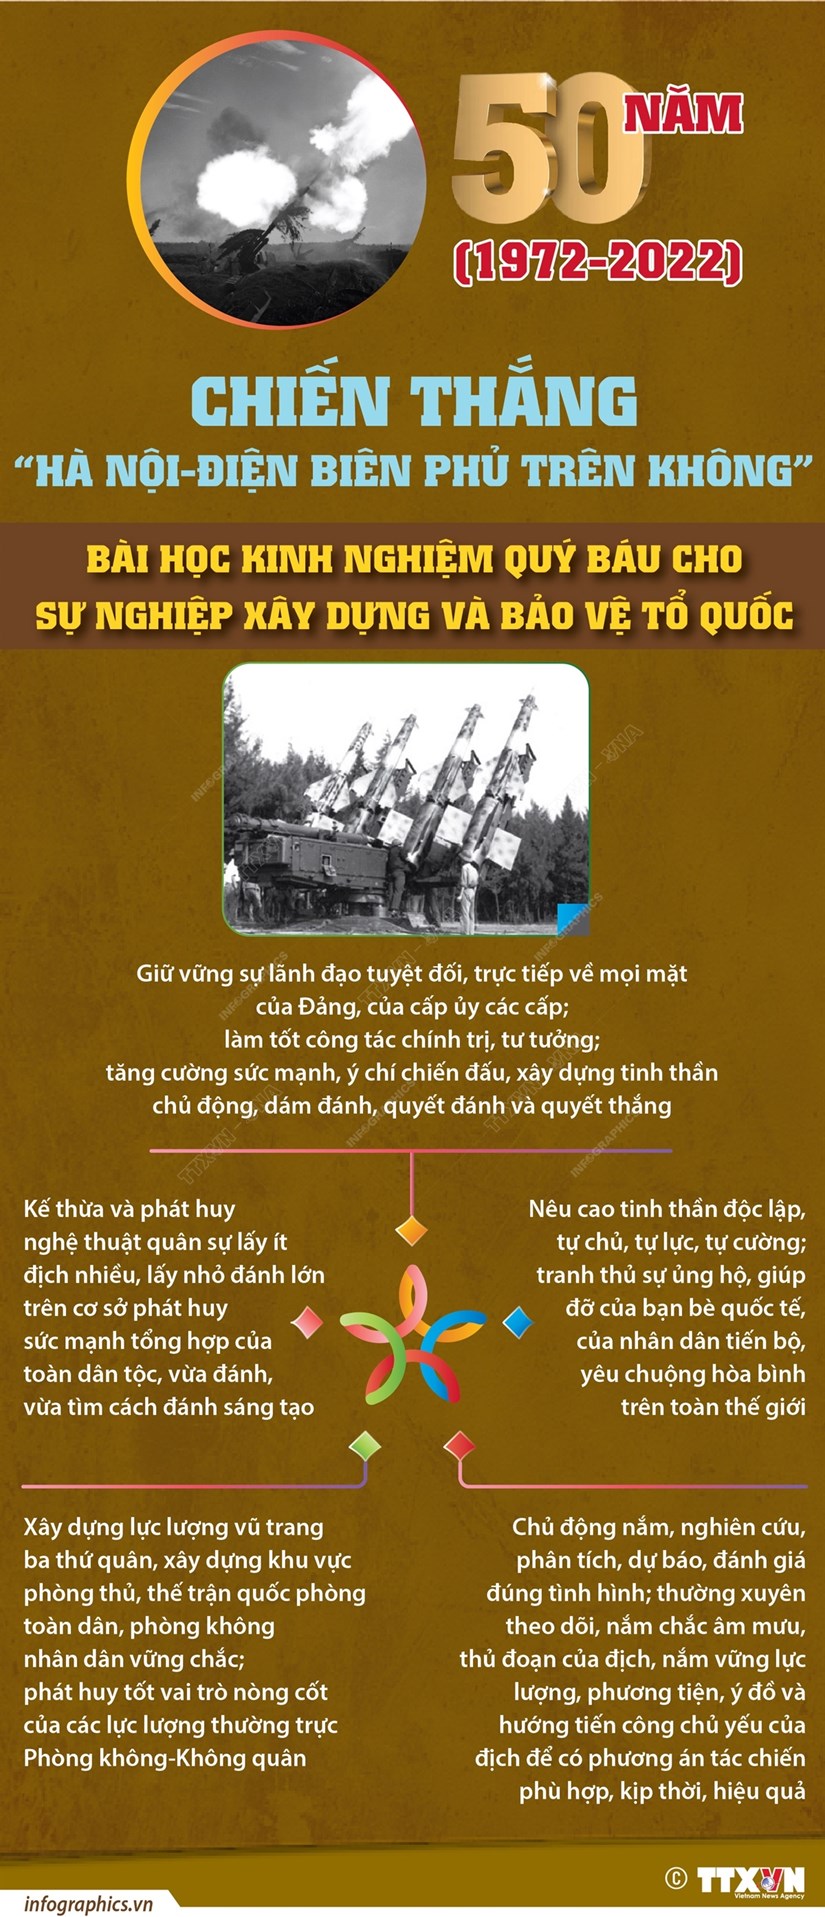 Chiến thắng Hà Nội-Điện Biên Phủ trên không: Bài học kinh nghiệm quý - Ảnh 1.